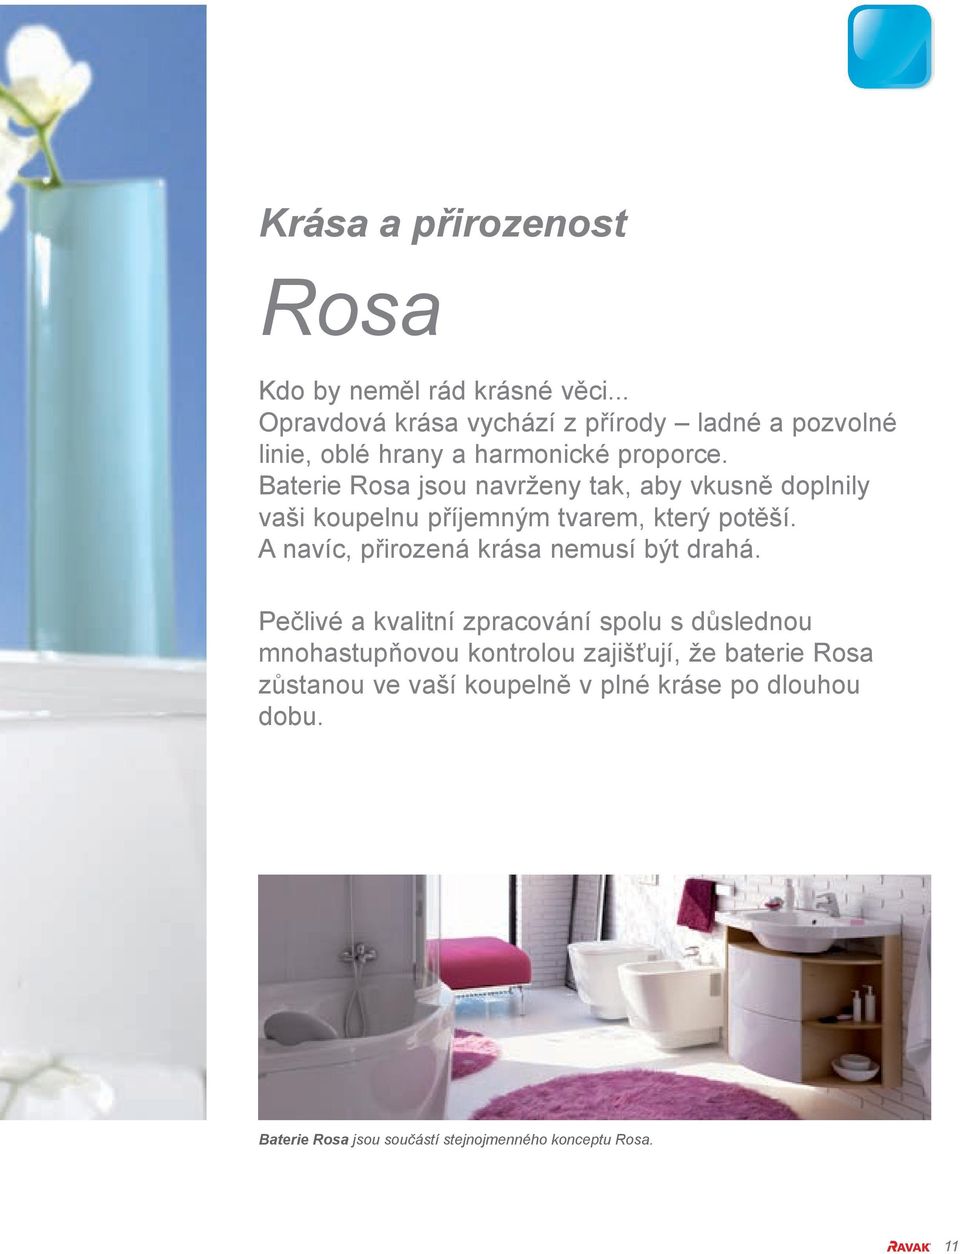 Baterie Rosa jsou navrženy tak, aby vkusně doplnily vaši koupelnu příjemným tvarem, který potěší.